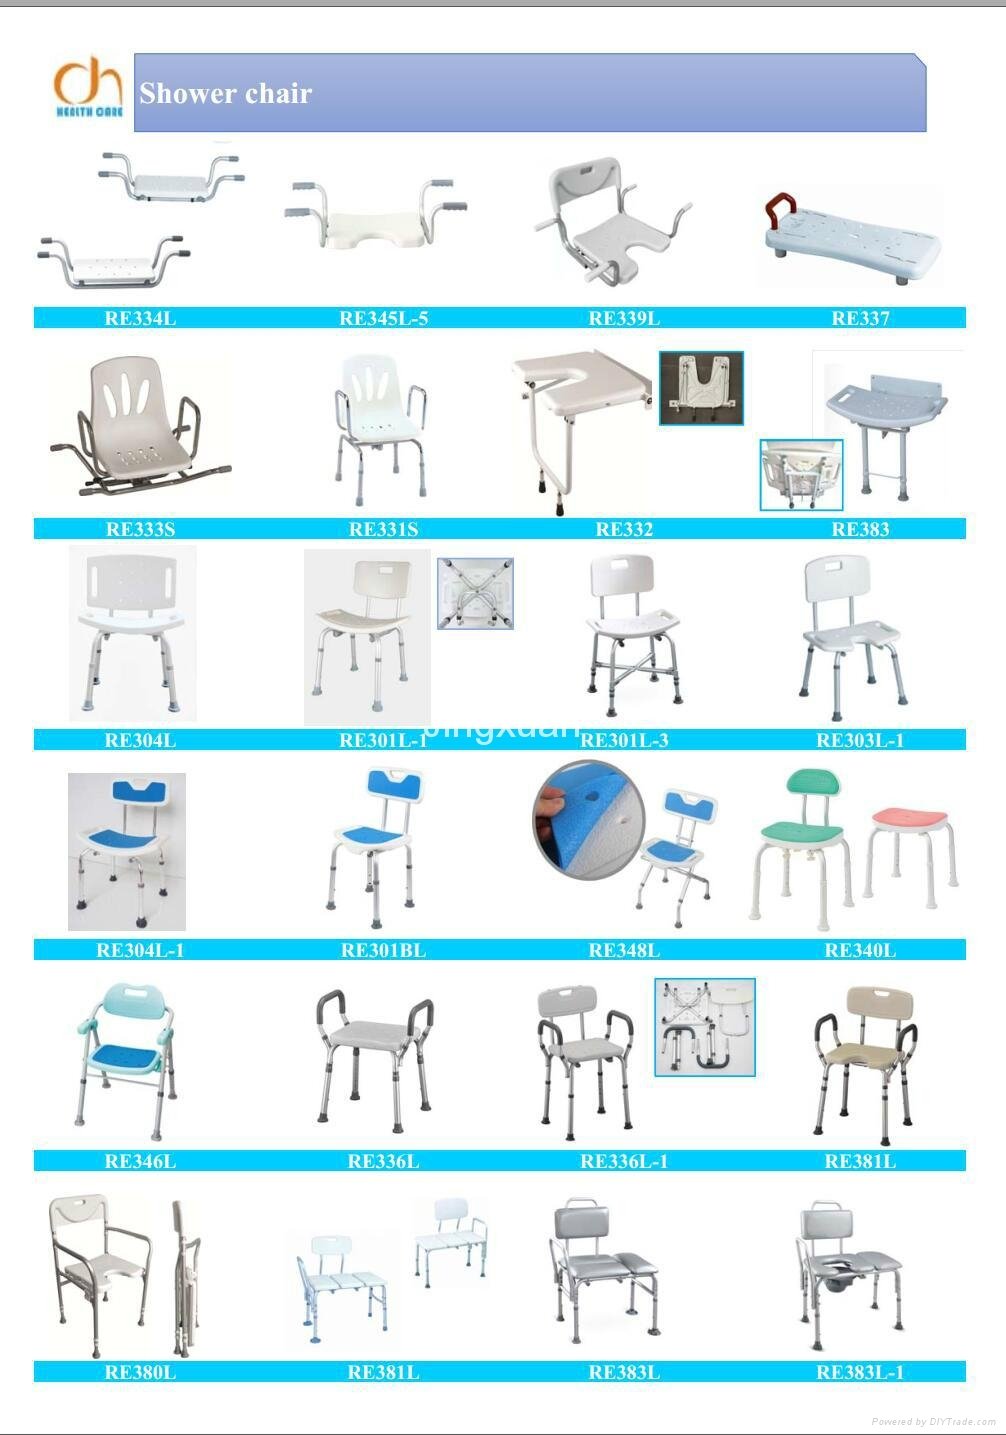 aluminum shower chair bath bench shower stool 1